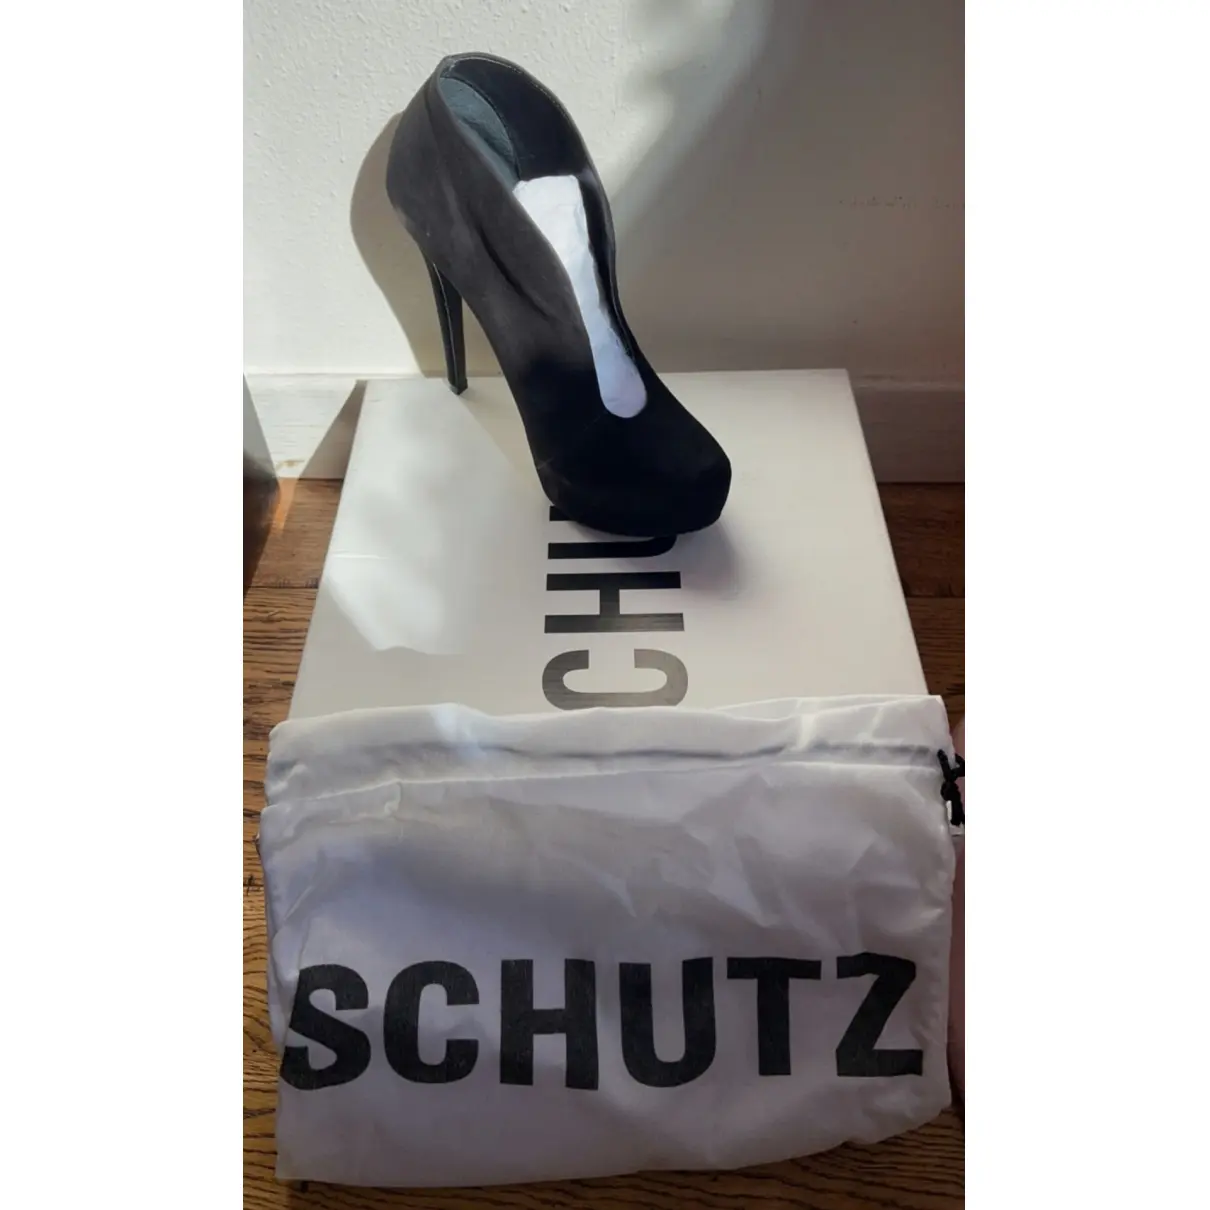 Buy Schutz Heels online